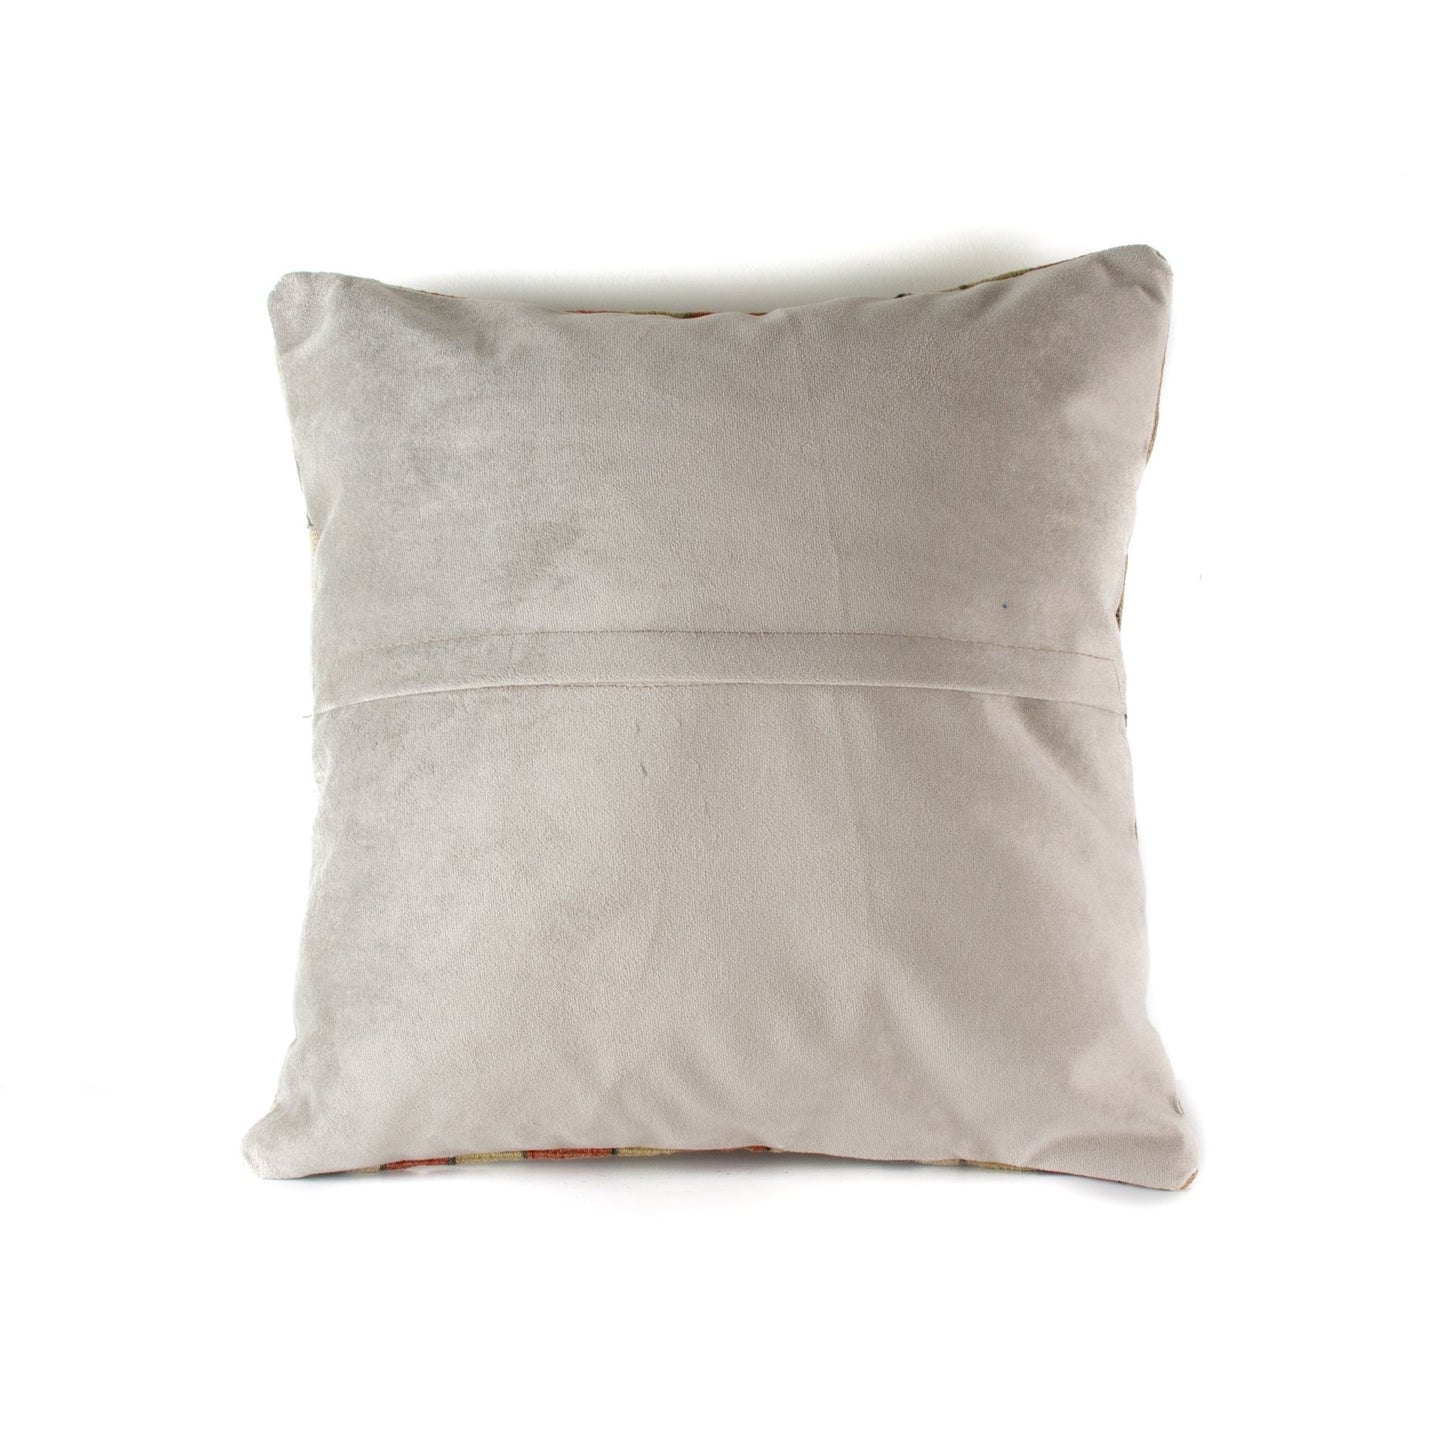 Kilim "Striped" Pillow Cover - Kingdom Jewelry